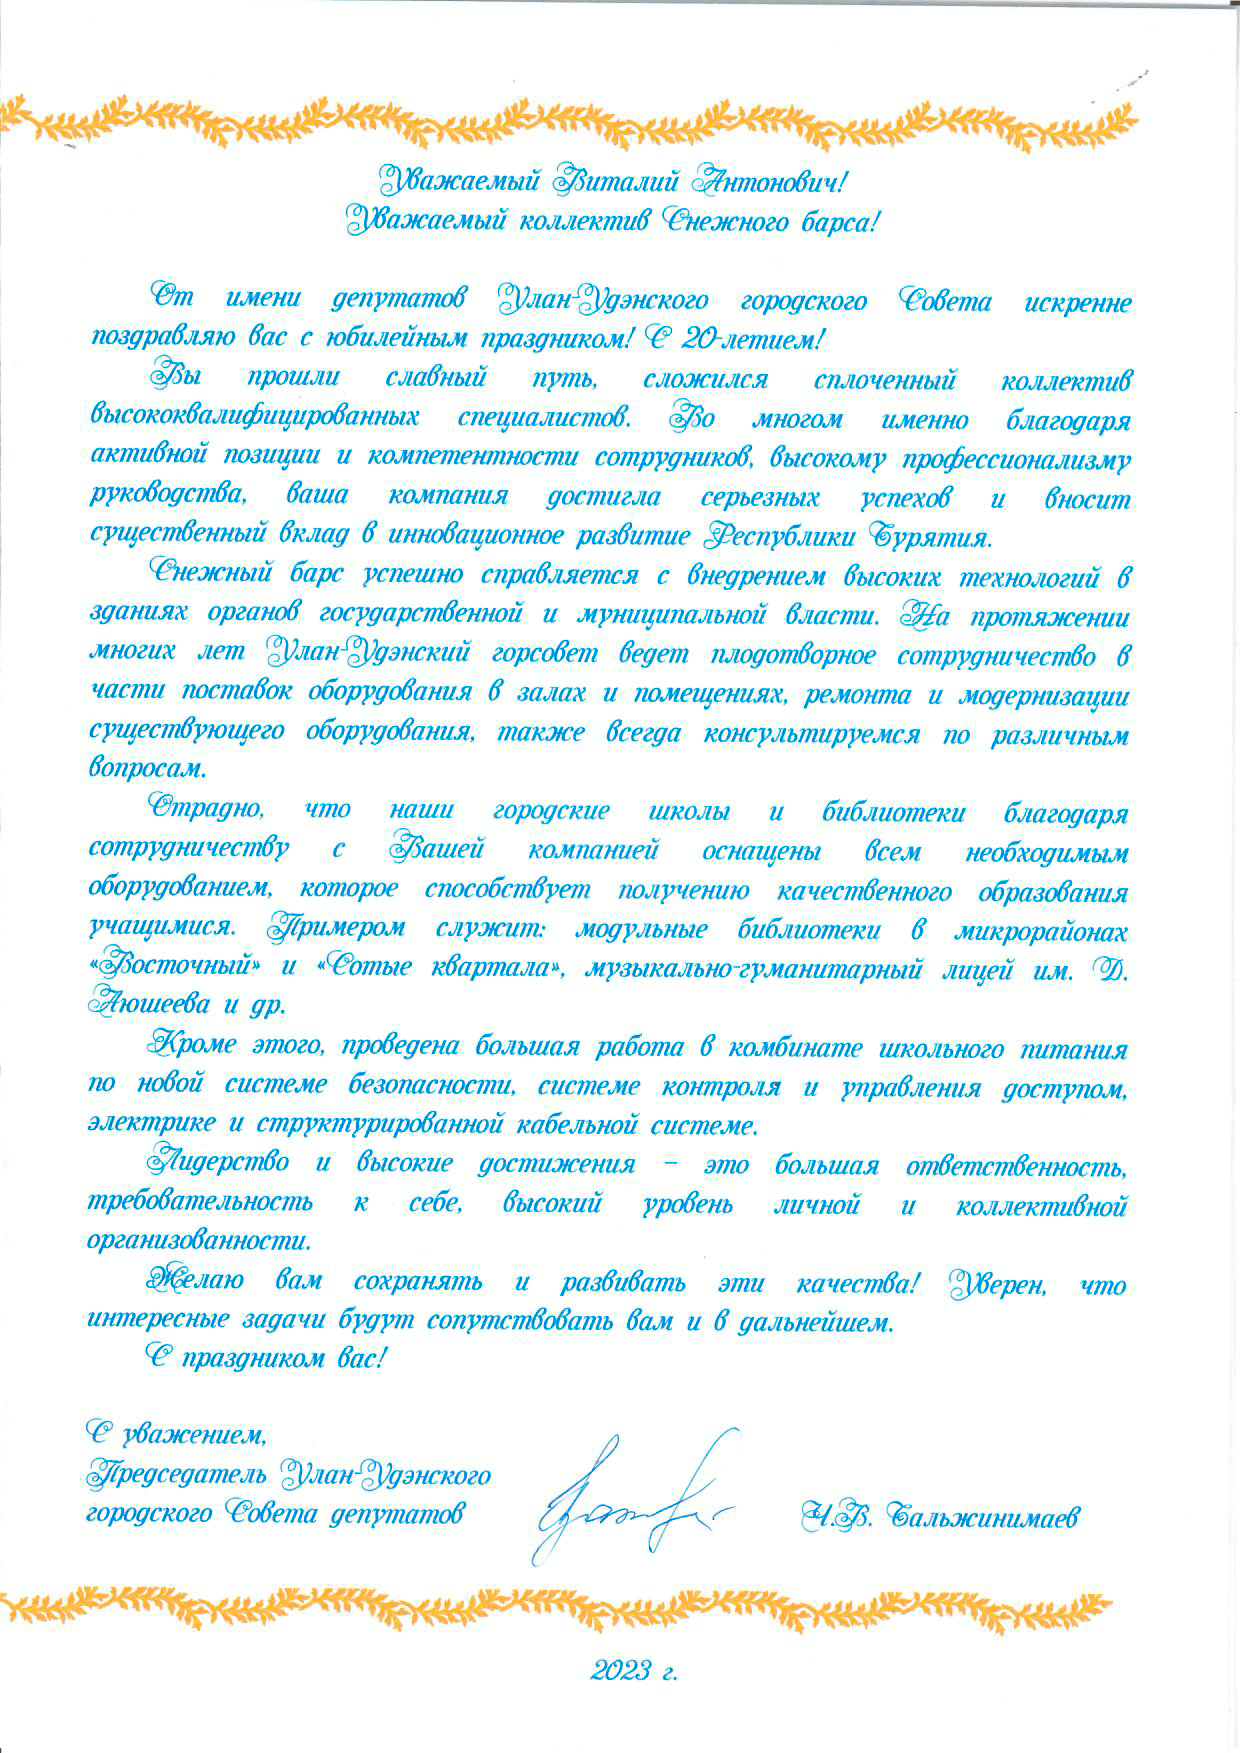 Поздравление с двадцатилетним юбилеем от Улан-Удэнского городского Совета депутатов